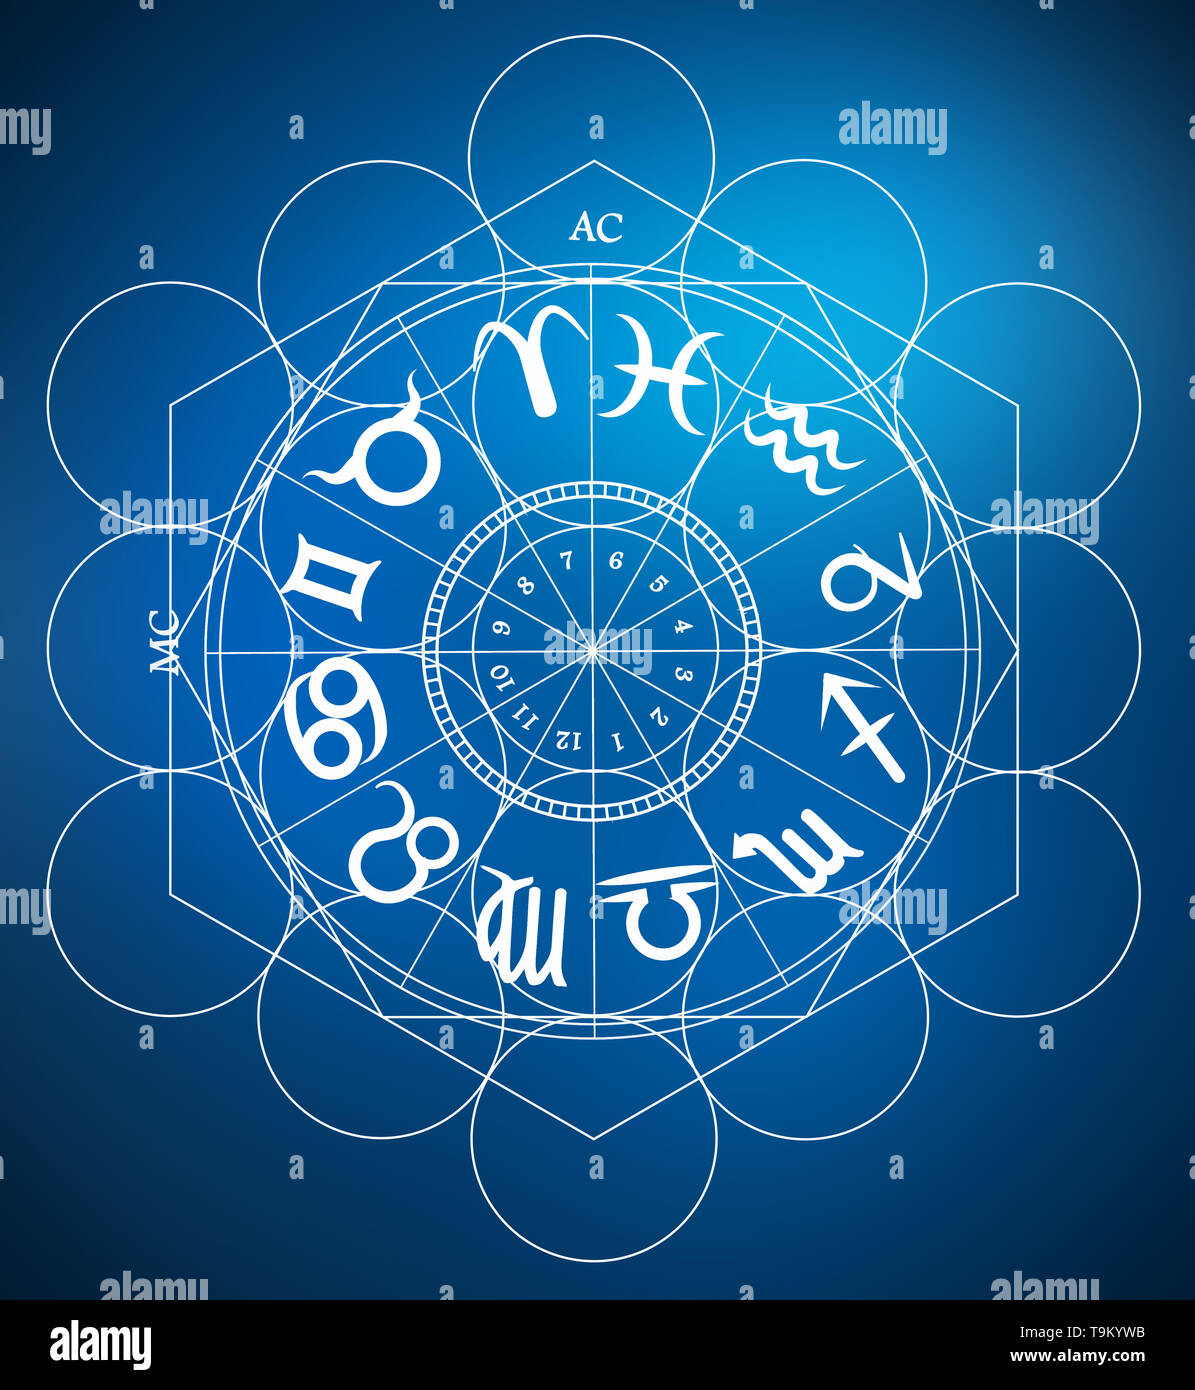 Sternzeichen Astrologie Symbole Stockfoto